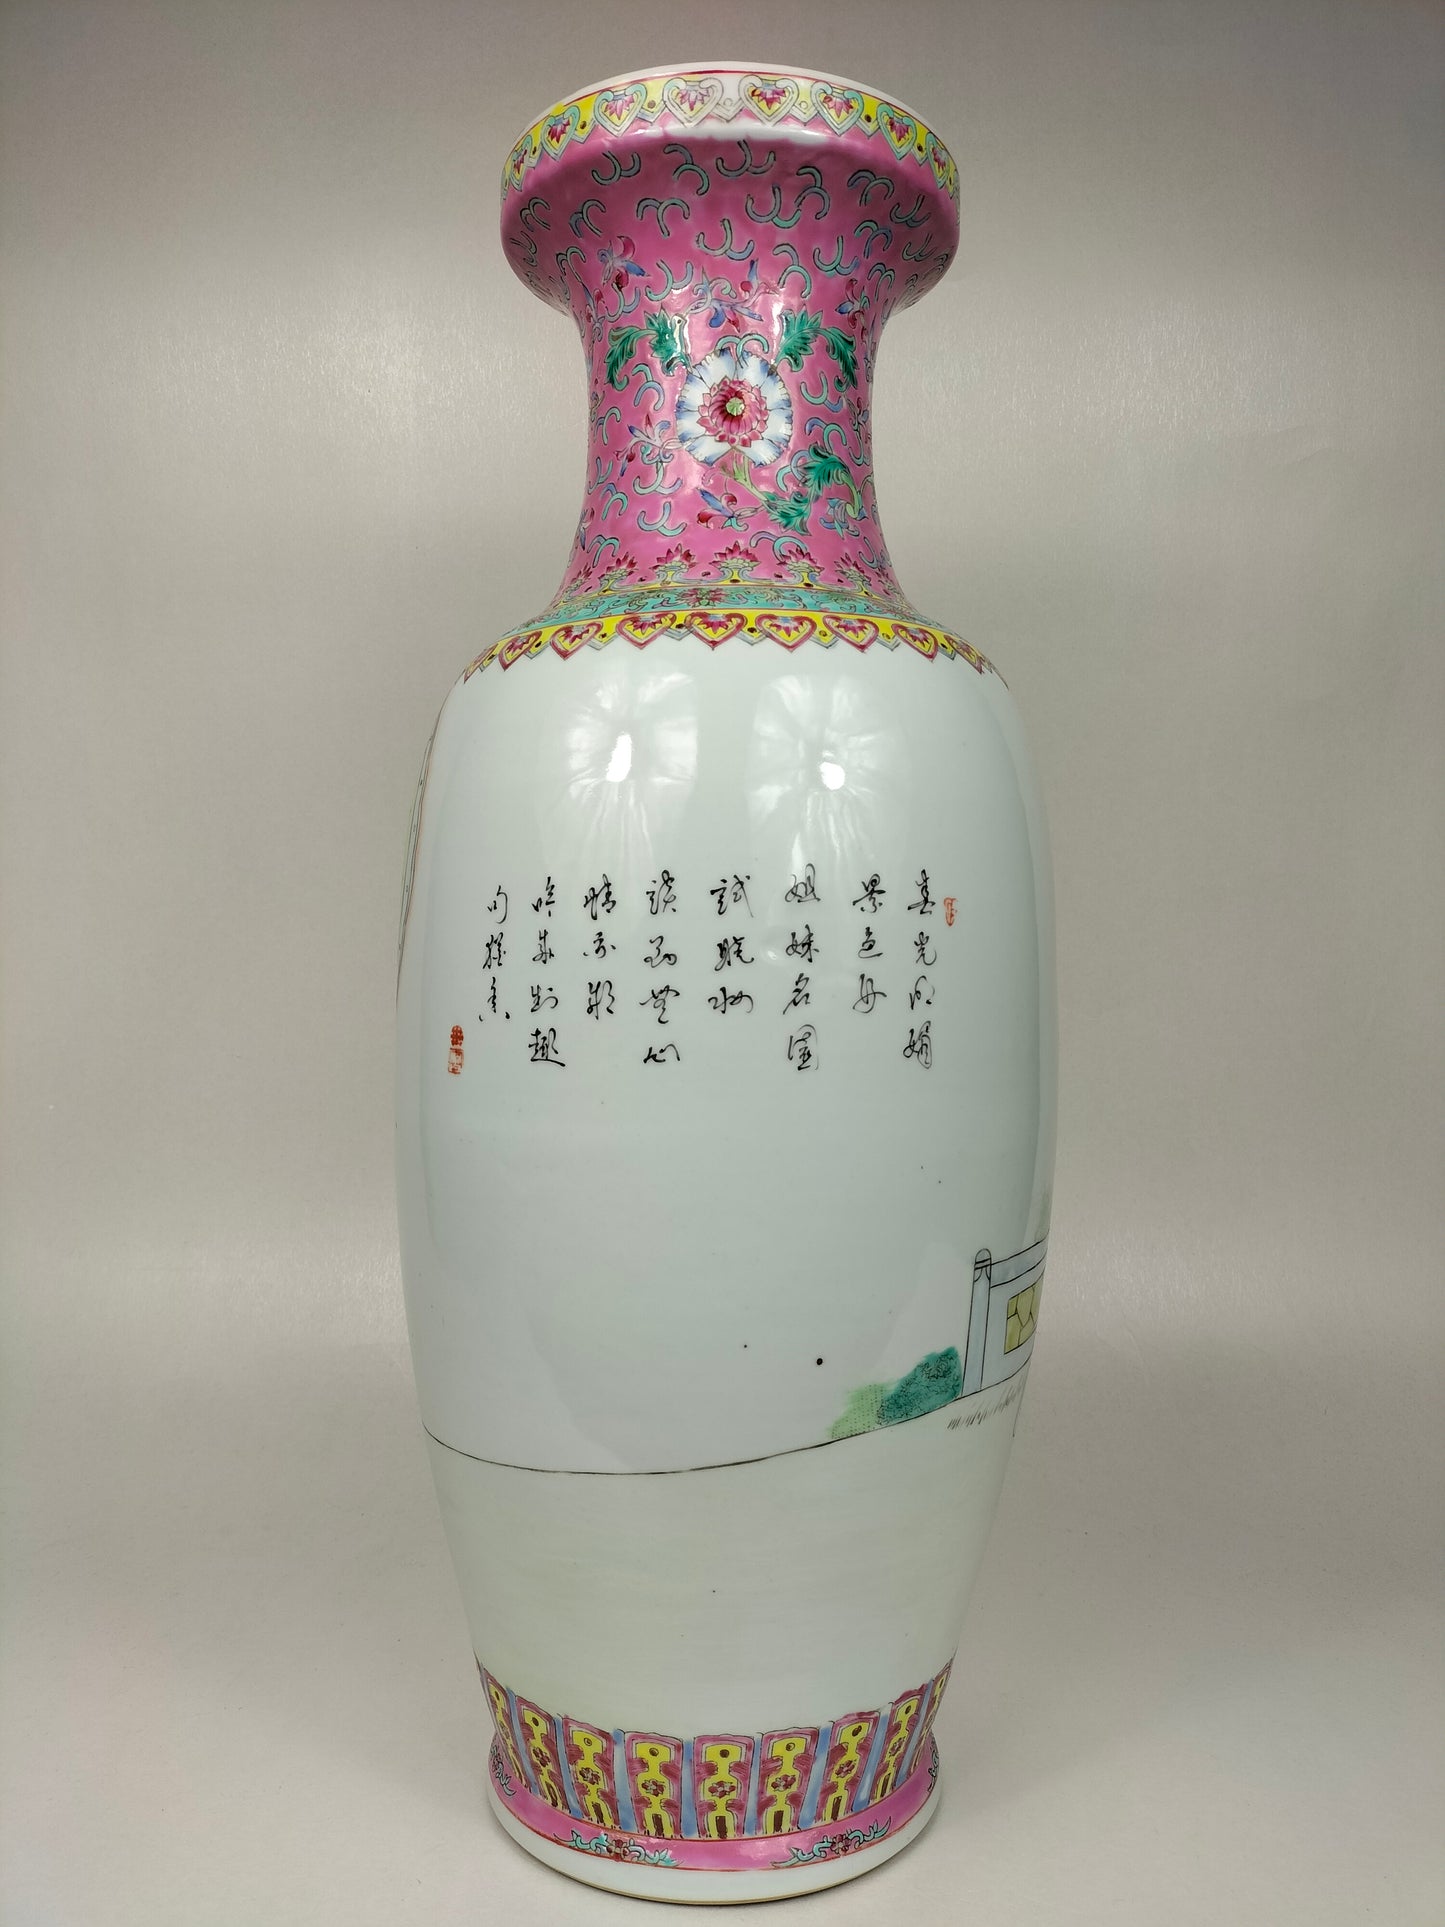 带有花园场景的大型中国粉彩花瓶 // 景德镇 - 20 世纪